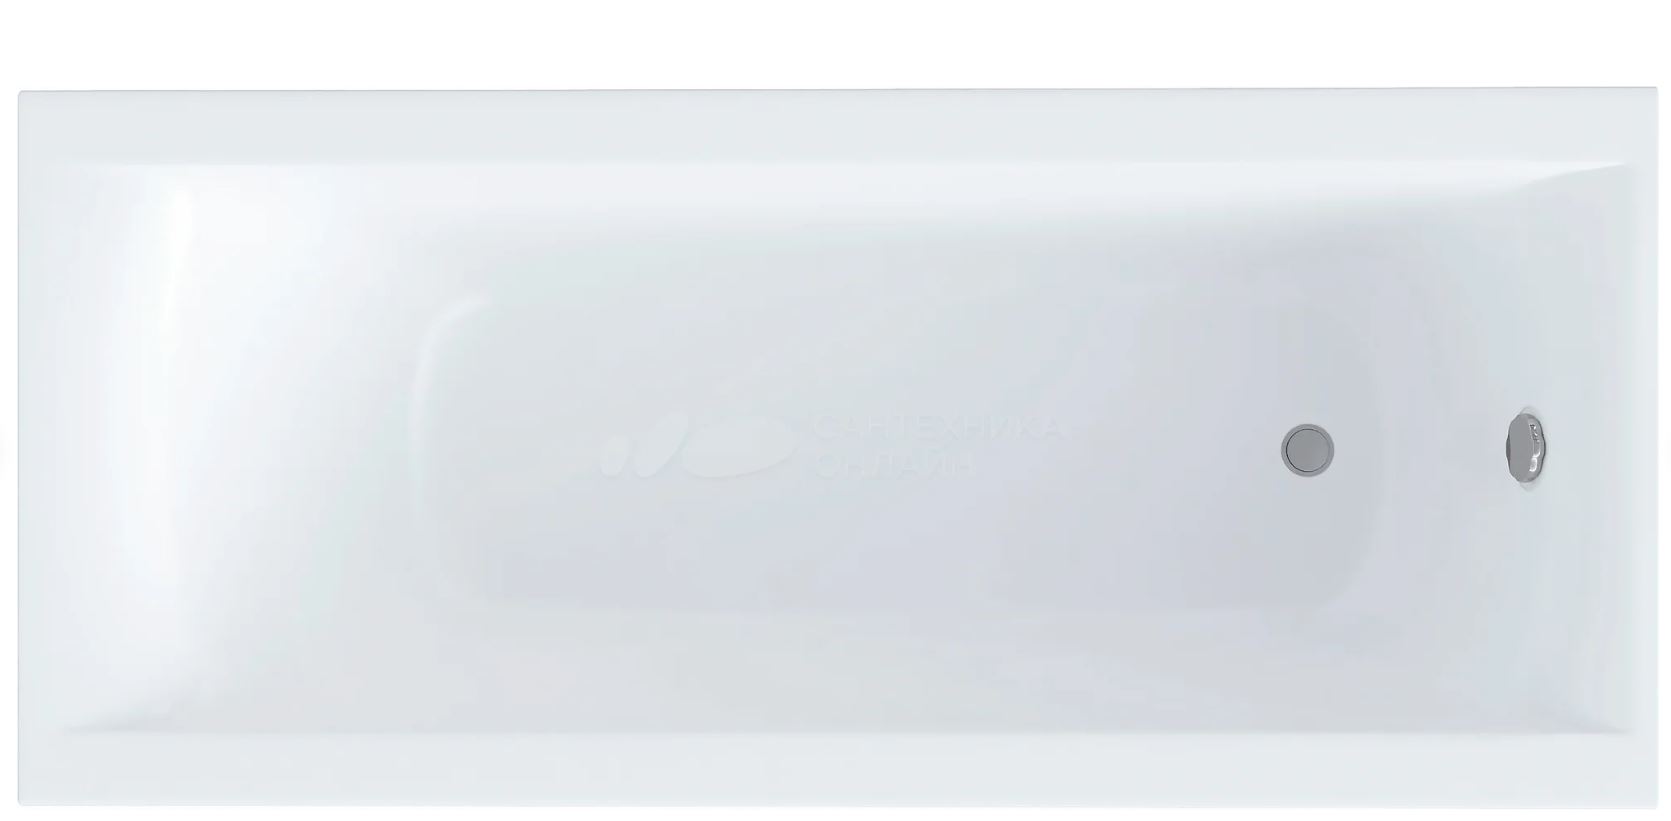 Ванна Астра-Форм Нью-Форм 160x70, размер 160x70, цвет белый